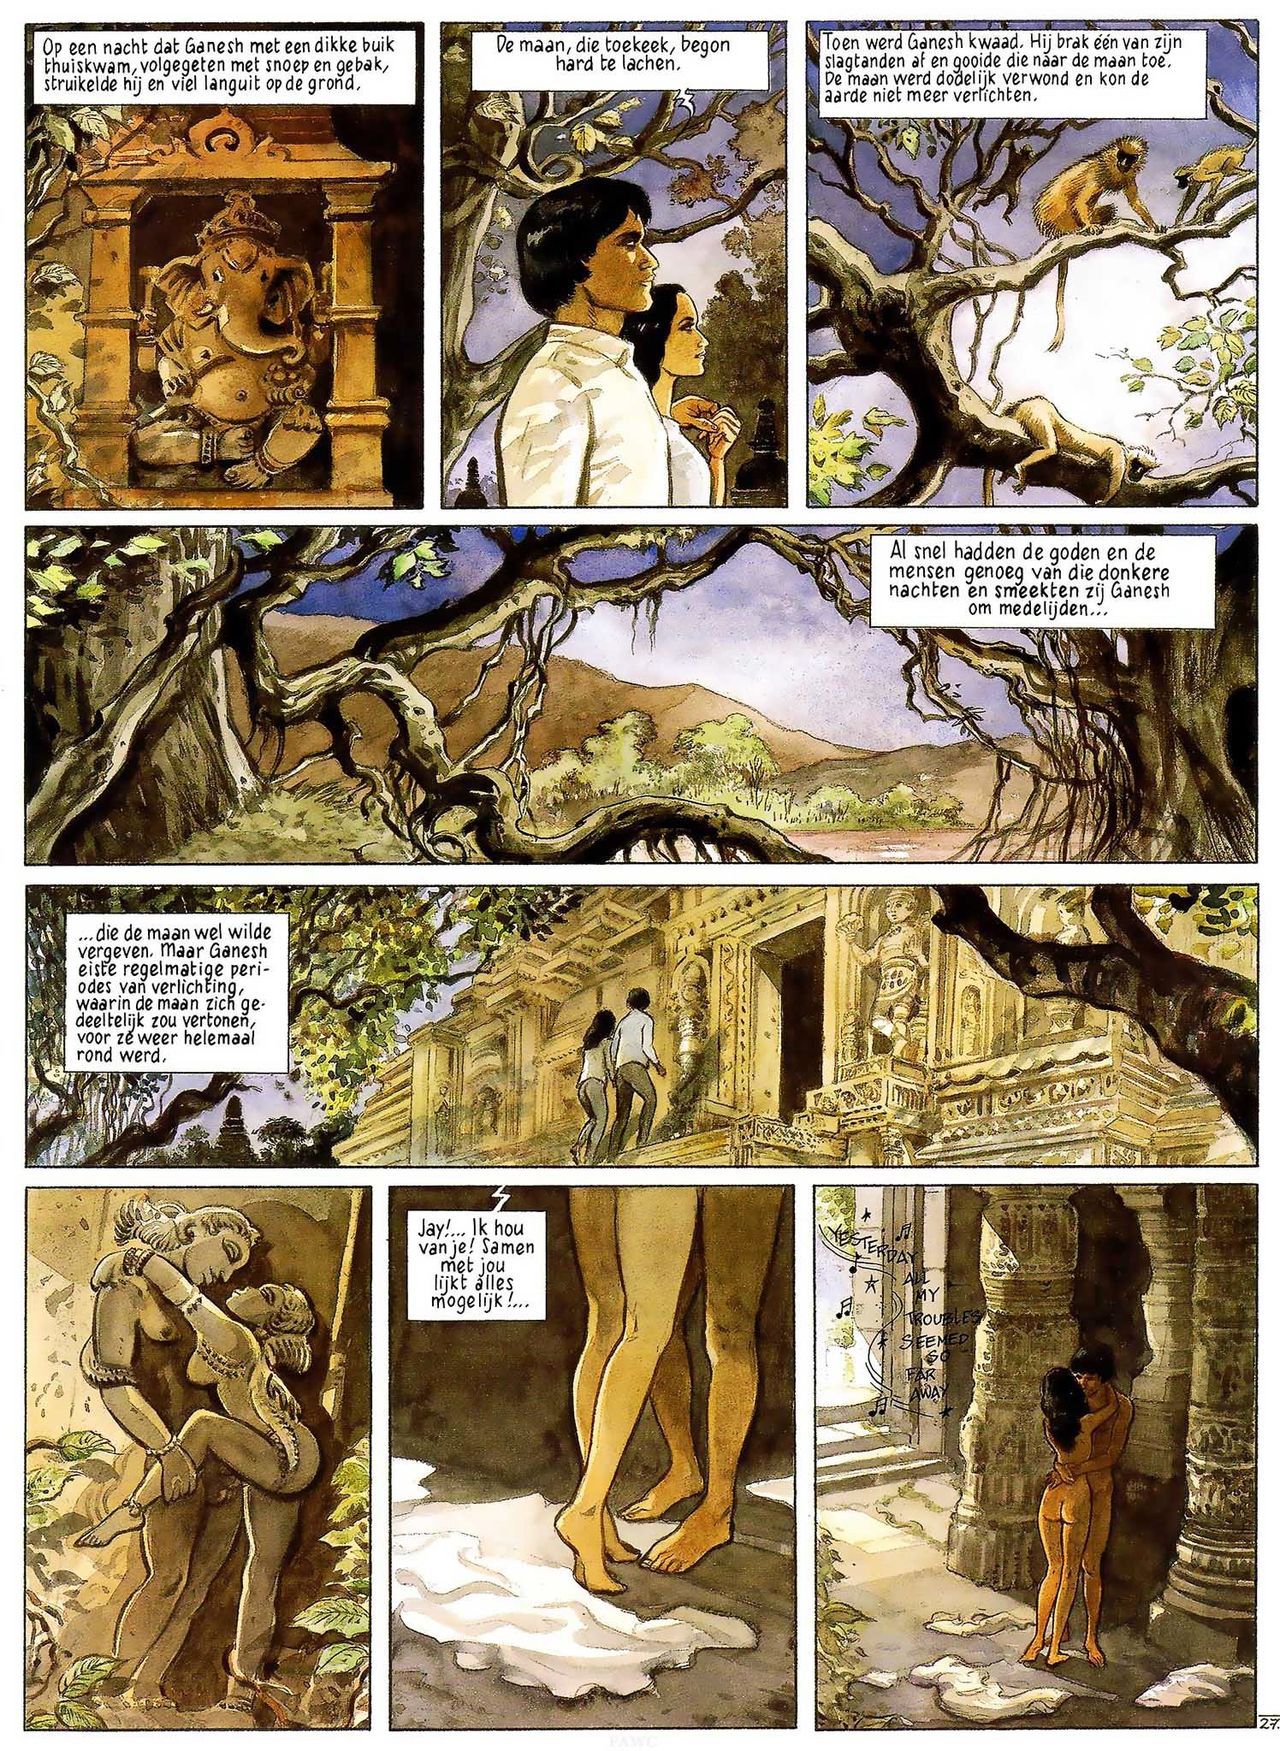 India Dreams - 03 - In De Schaduw Van De Bougainvilles (Dutch) Engelstalige en Duitse strips die op deze site staan, hier is de Nederlandse uitgave! 29